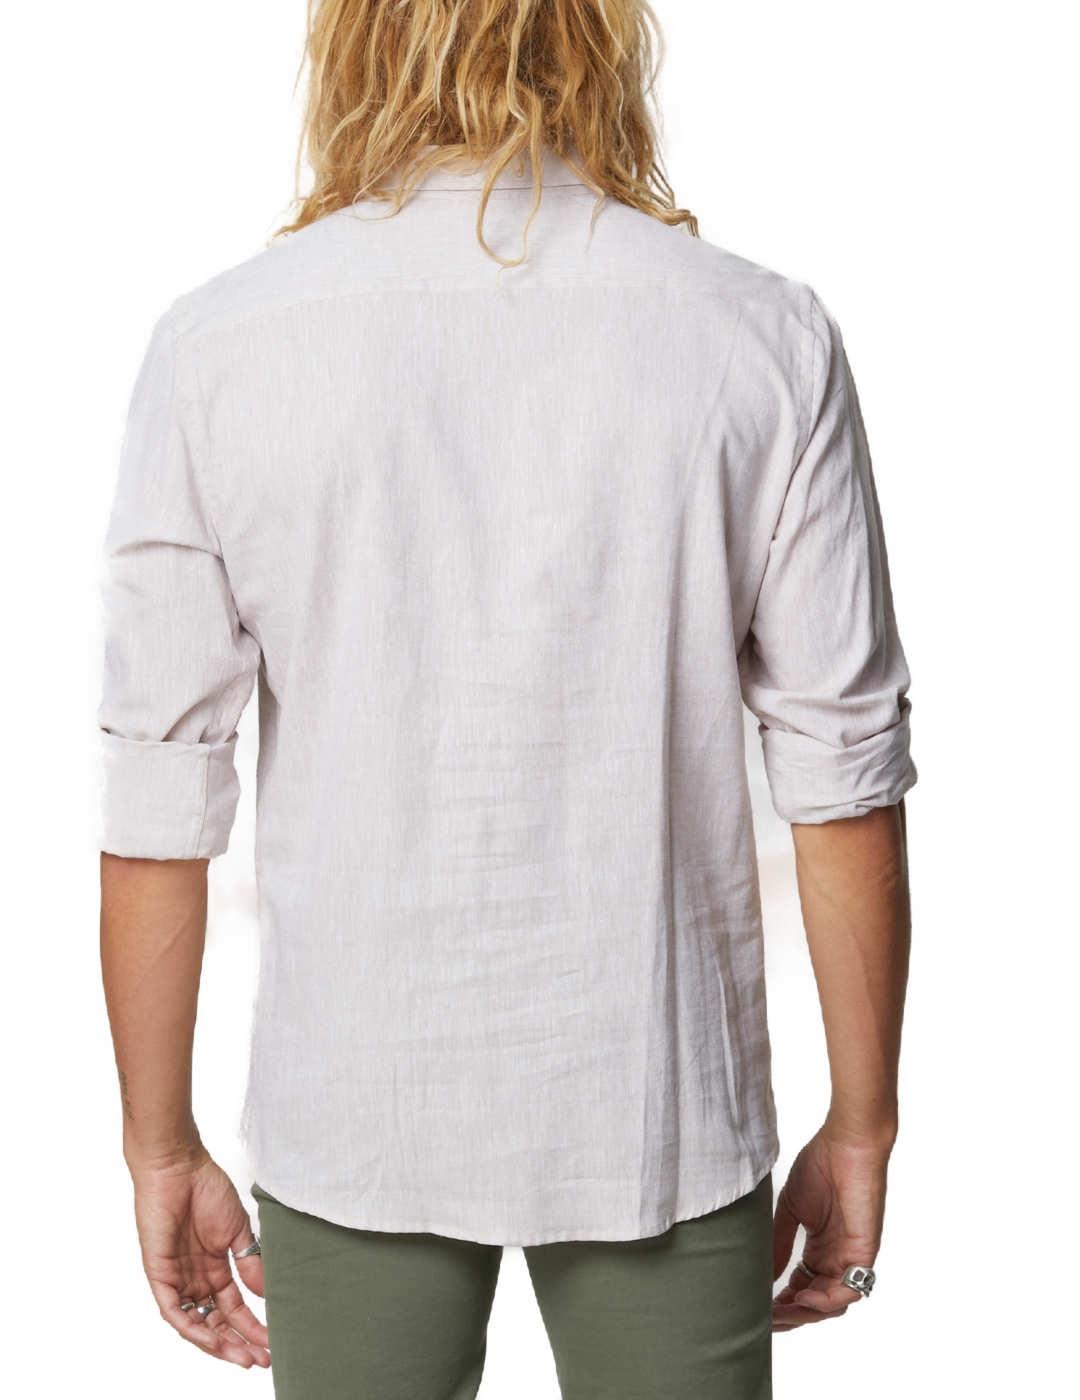 Camisa Altonadock polera beige con logo bordado para hombre